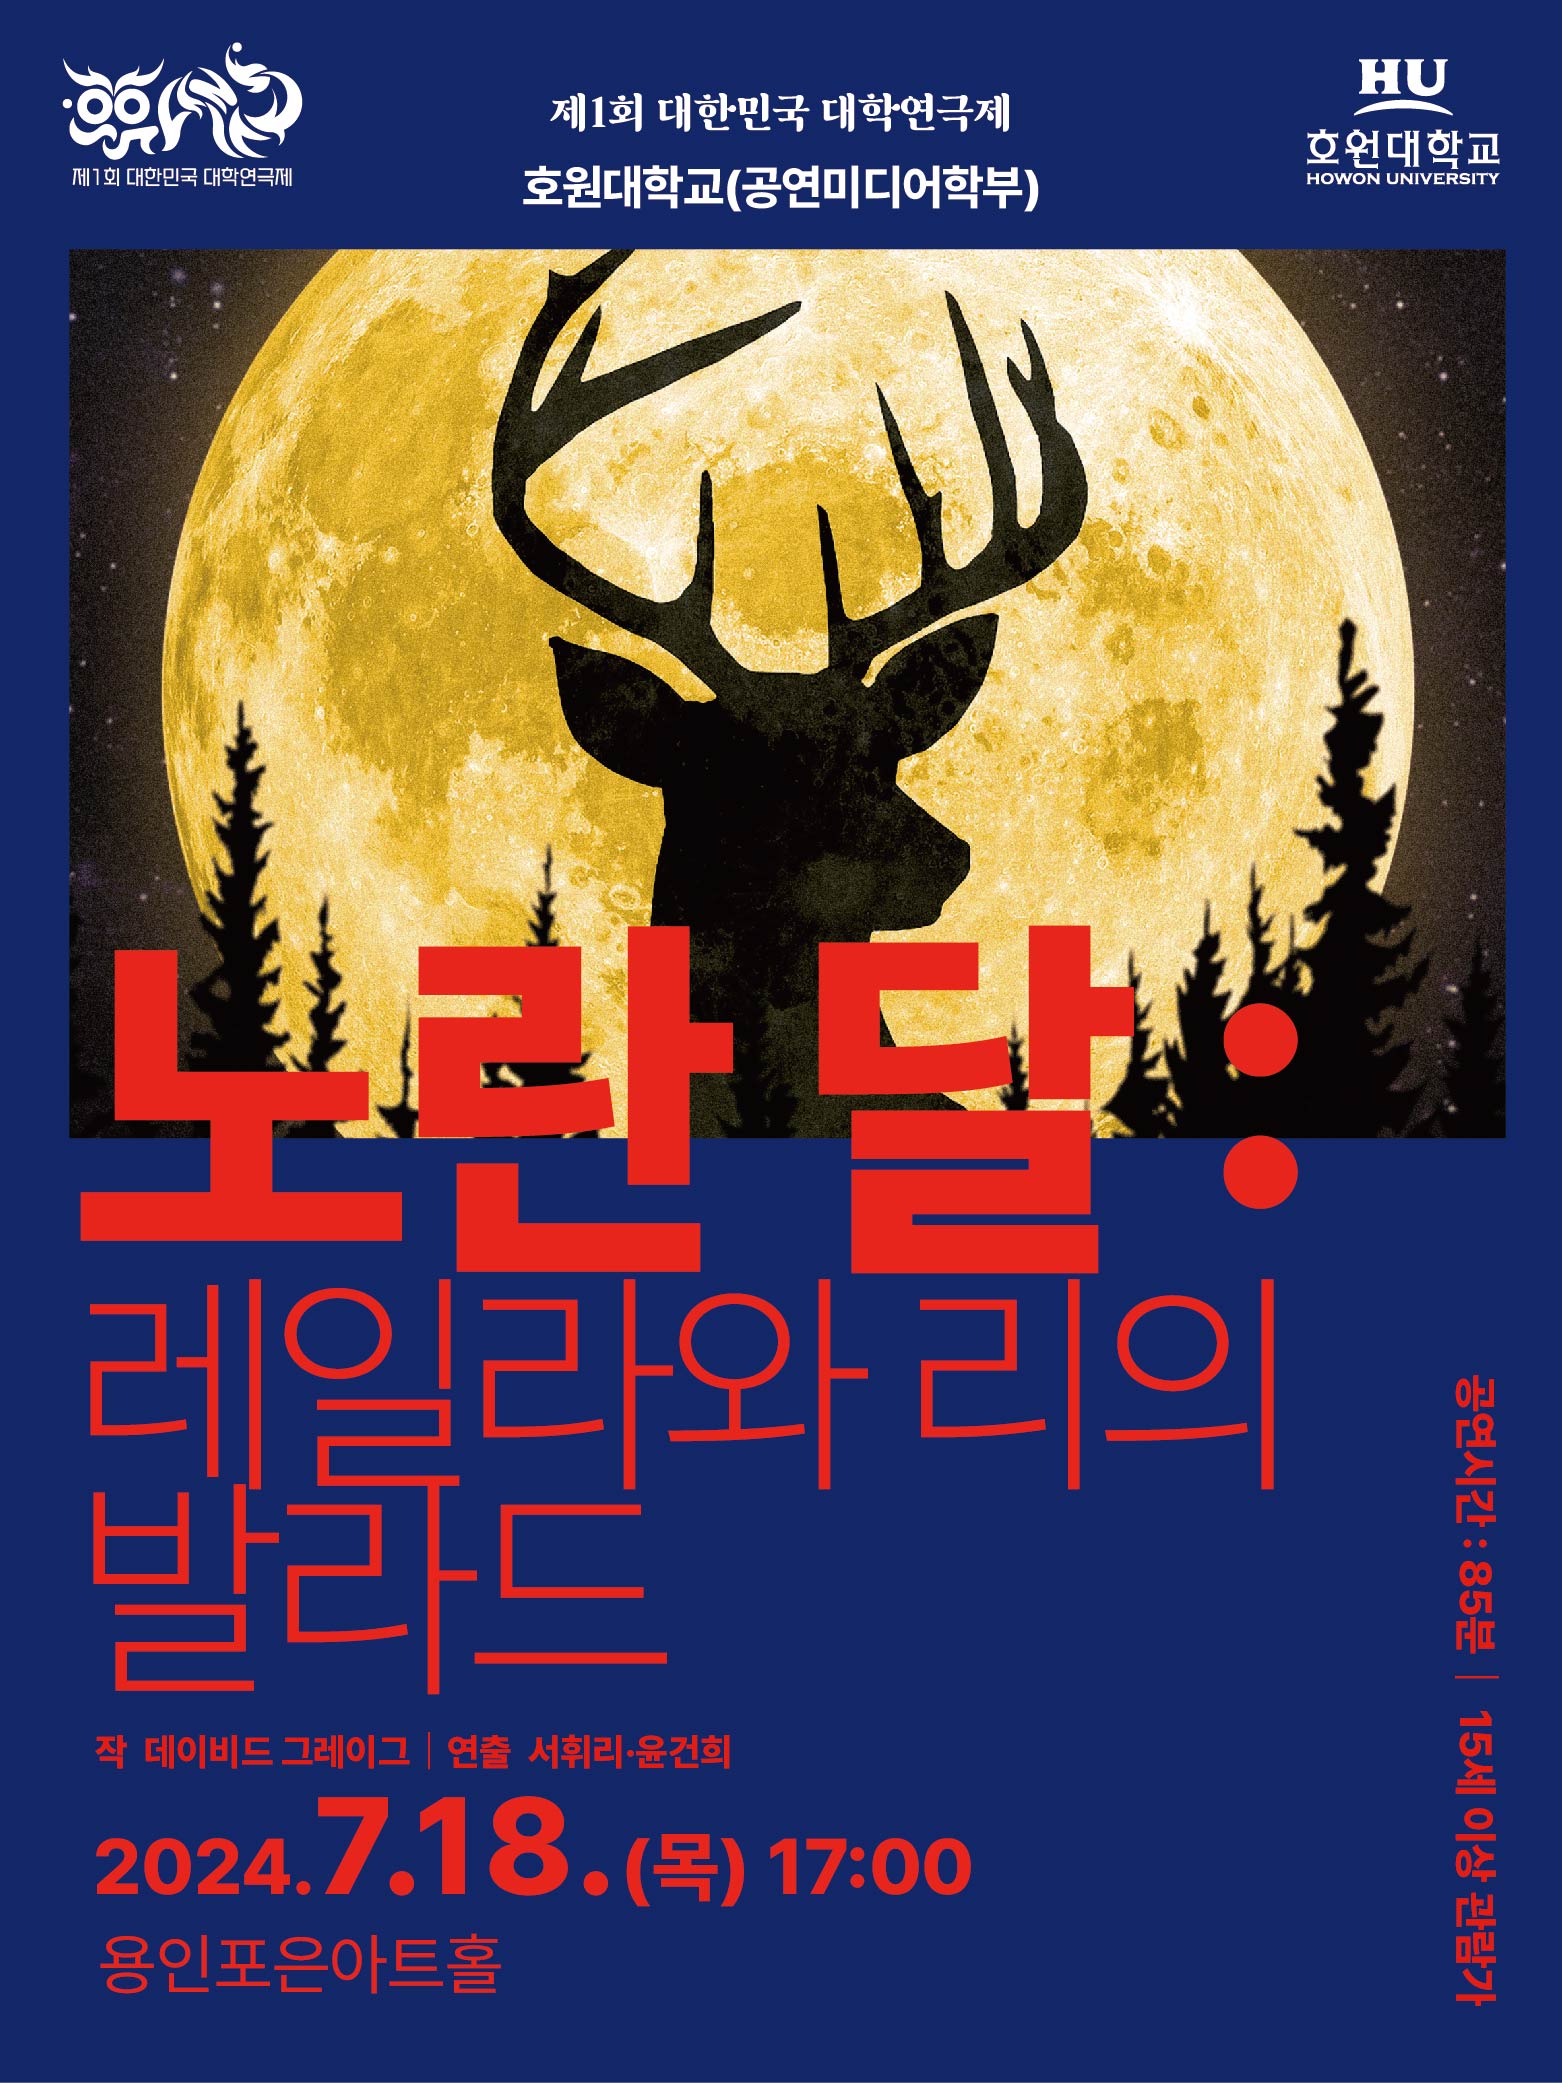 제1회 대한민국 대학연극제 〈노란 달:레일라와 리의 발라드〉 (호원대) 홍보포스터